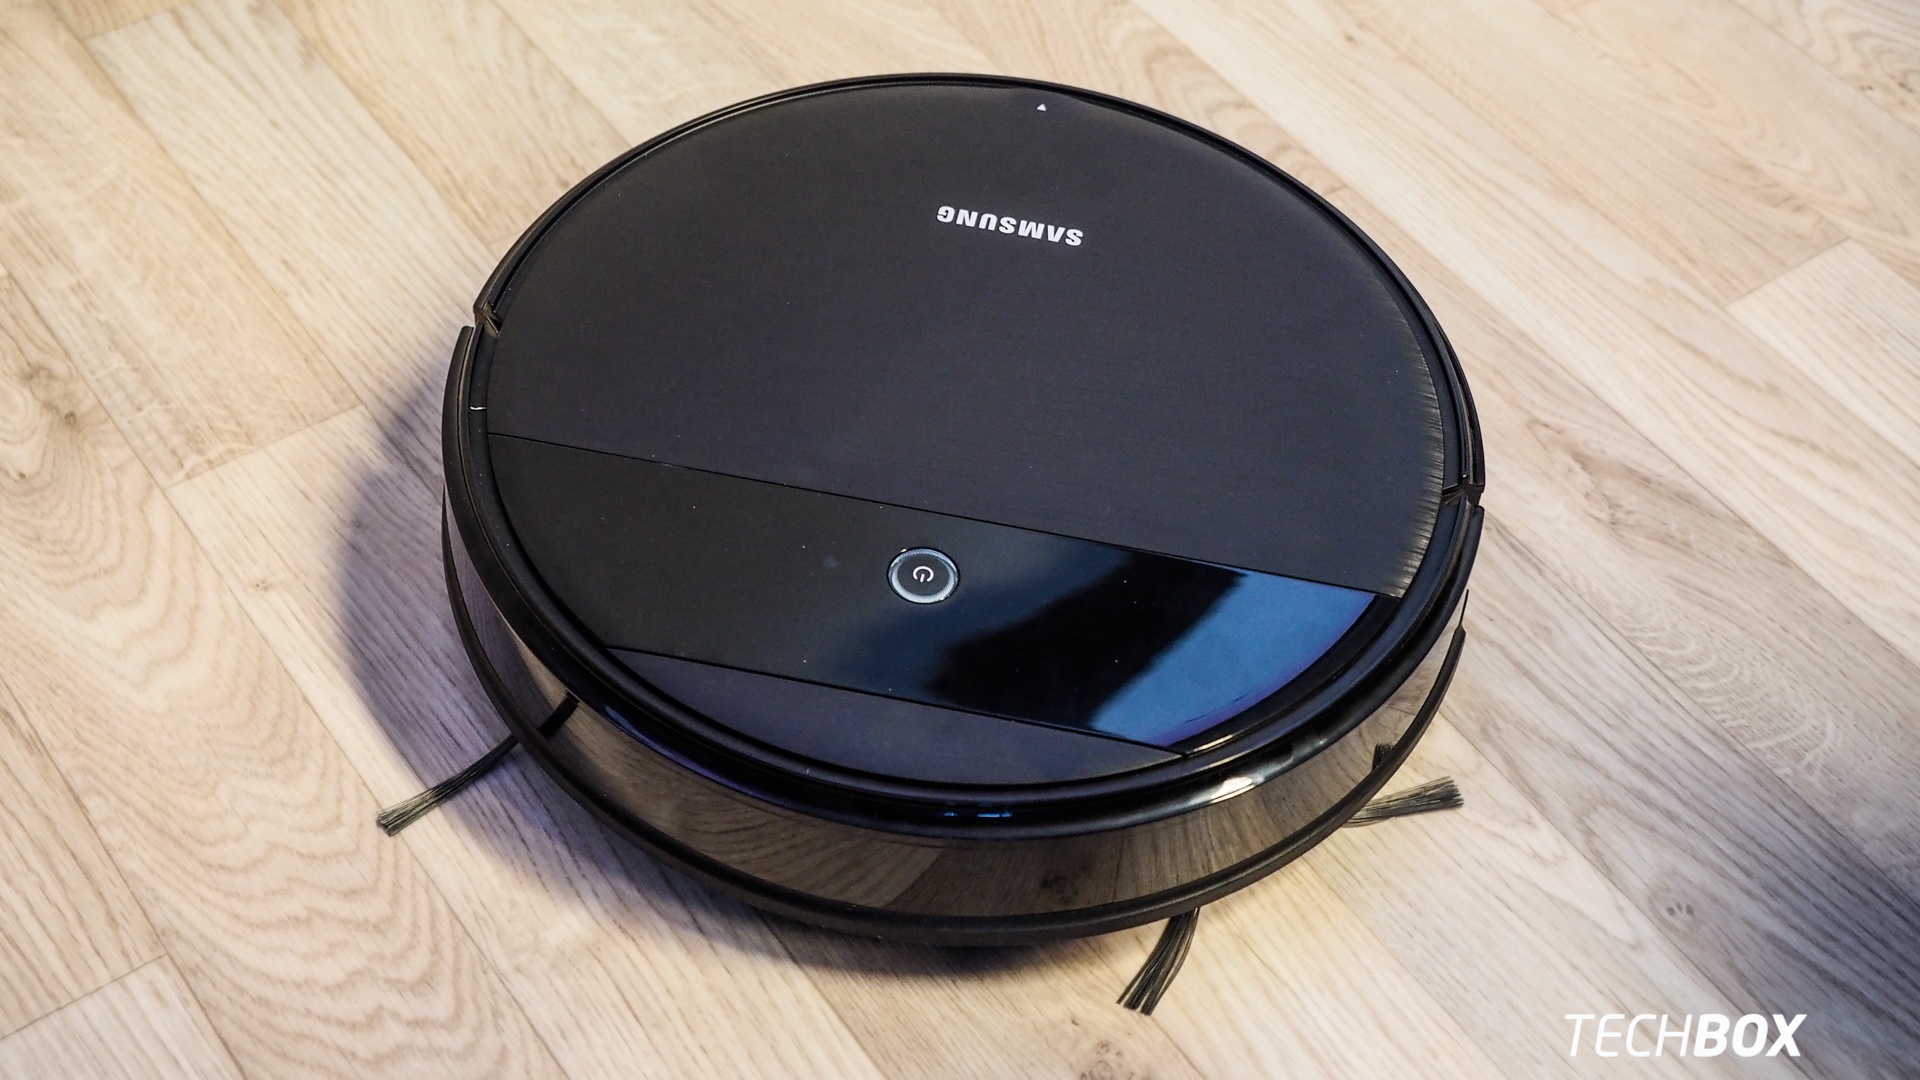 Samsung Powerbot E Vacuum Review